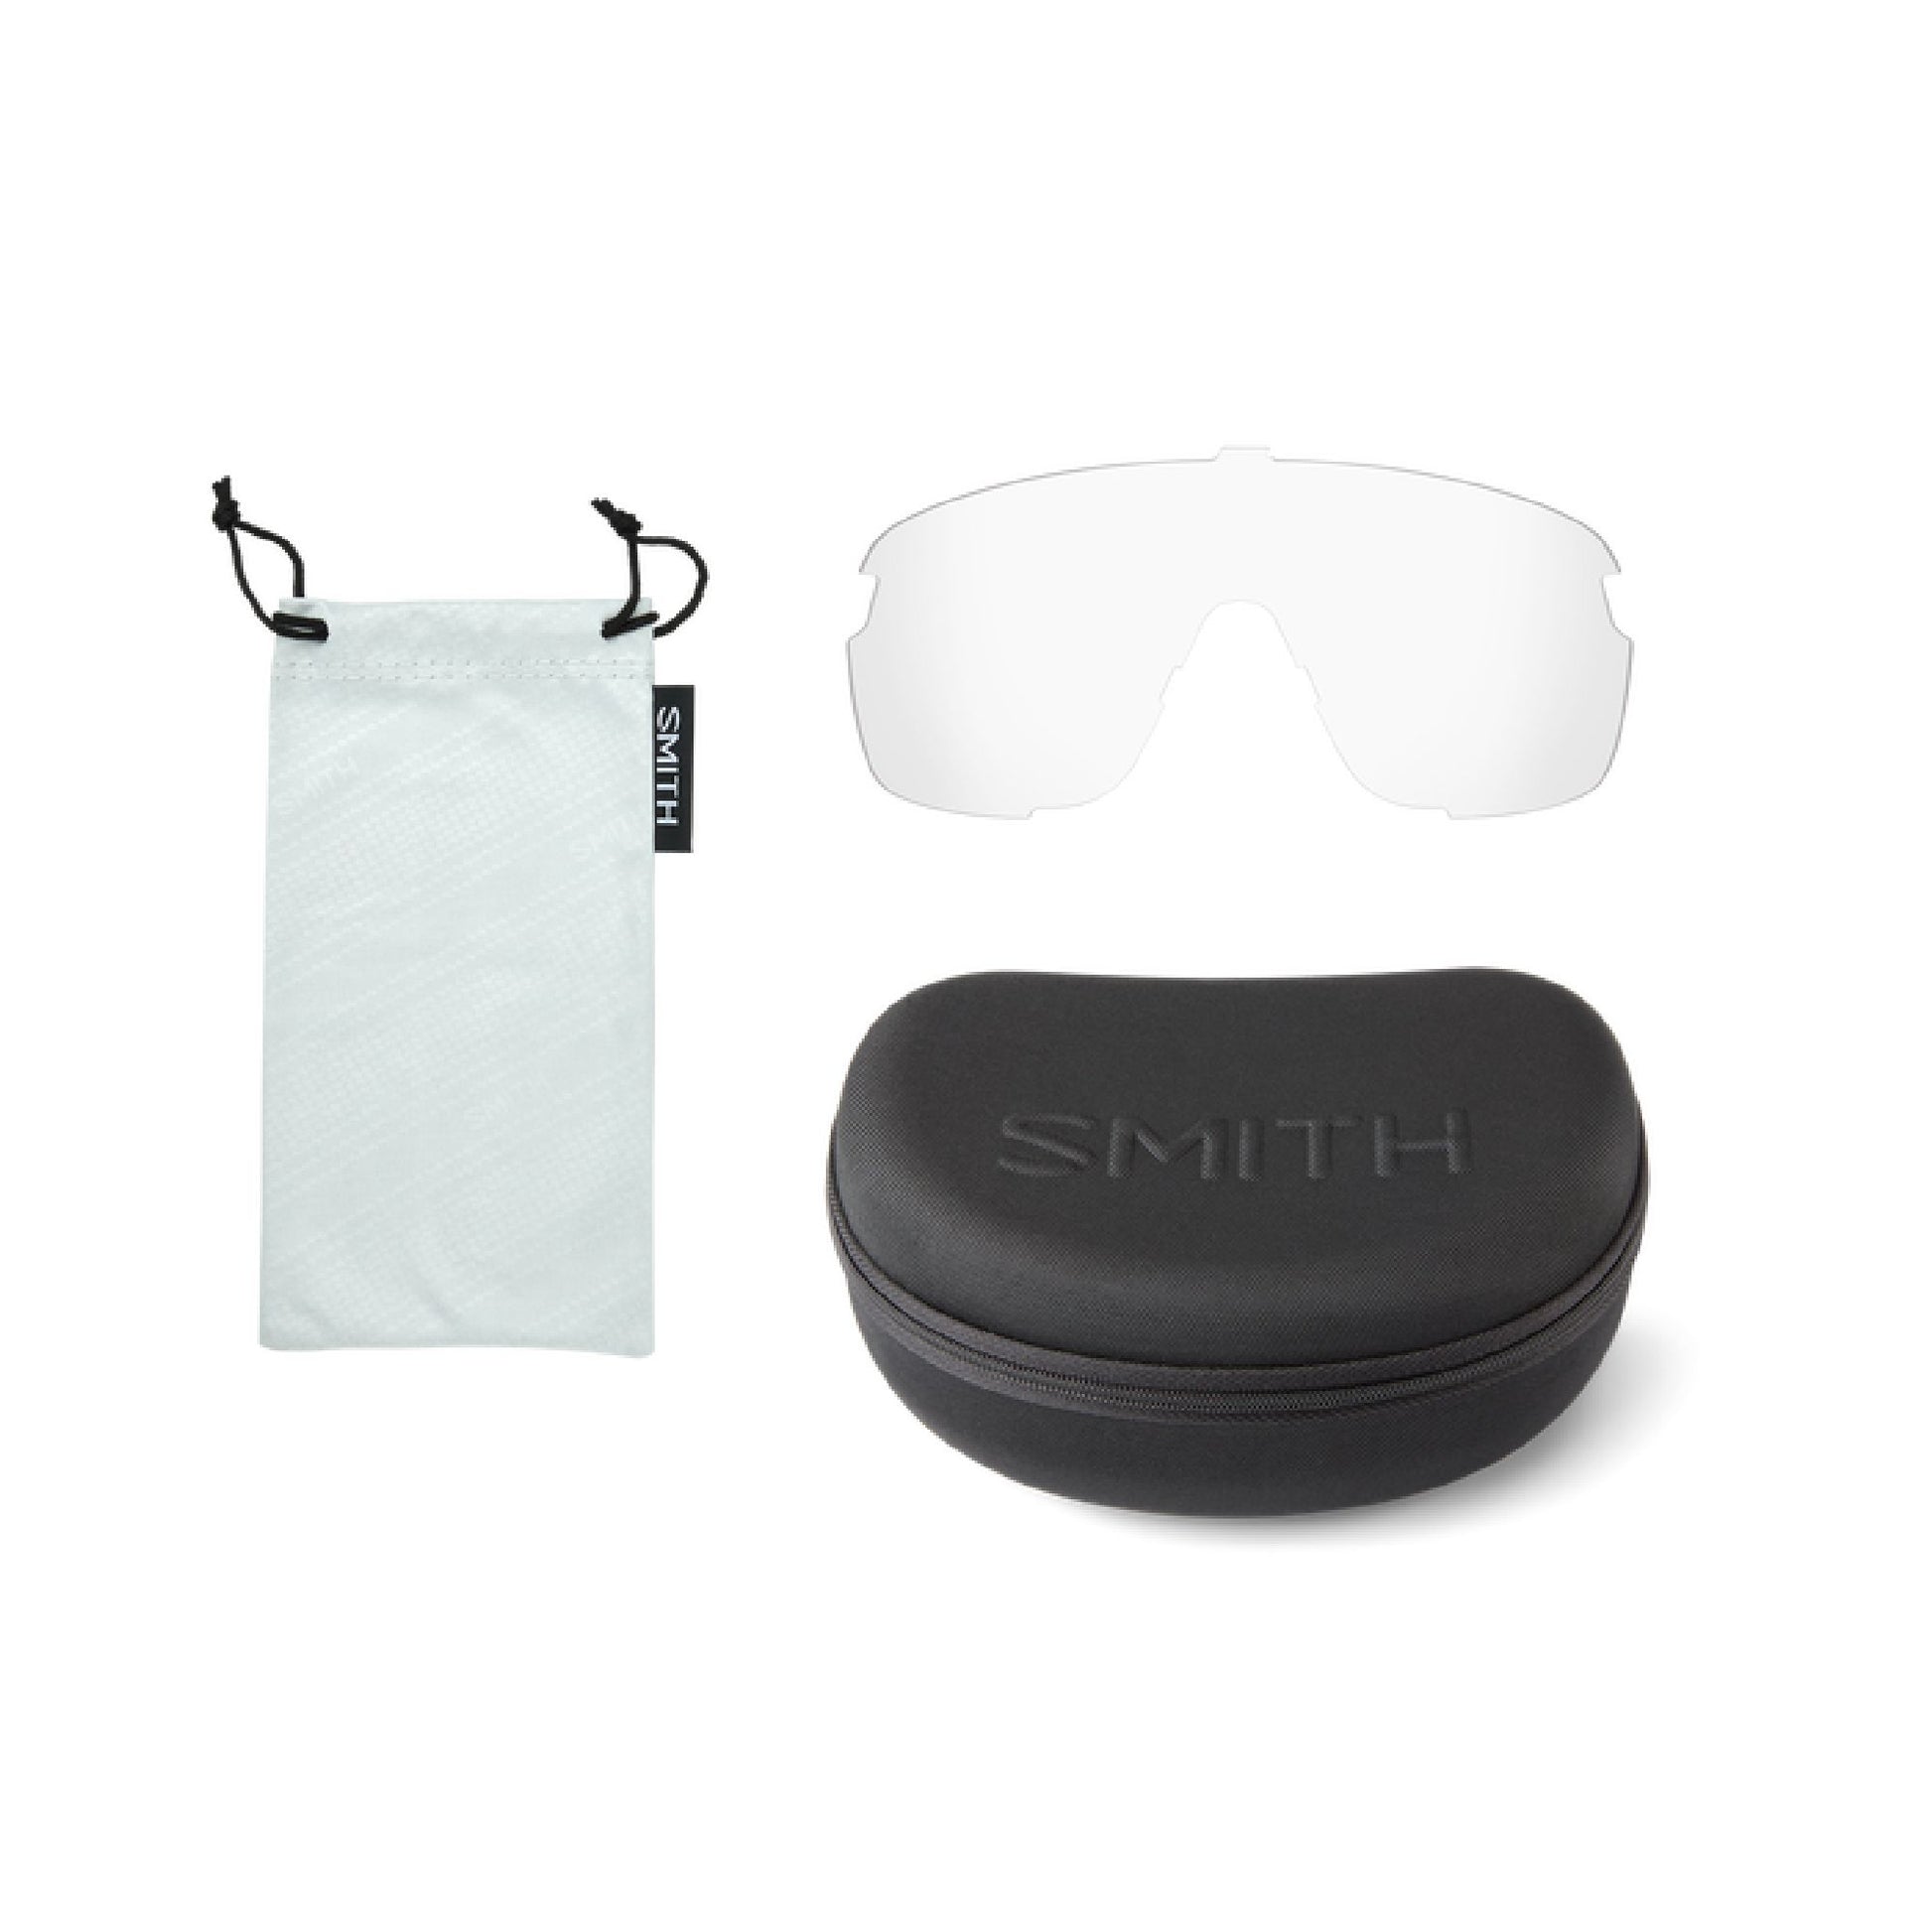 Smith Bobcat Sunglasses Matte Black Marble ChromaPop Violet Mirror Lens Sunglasses